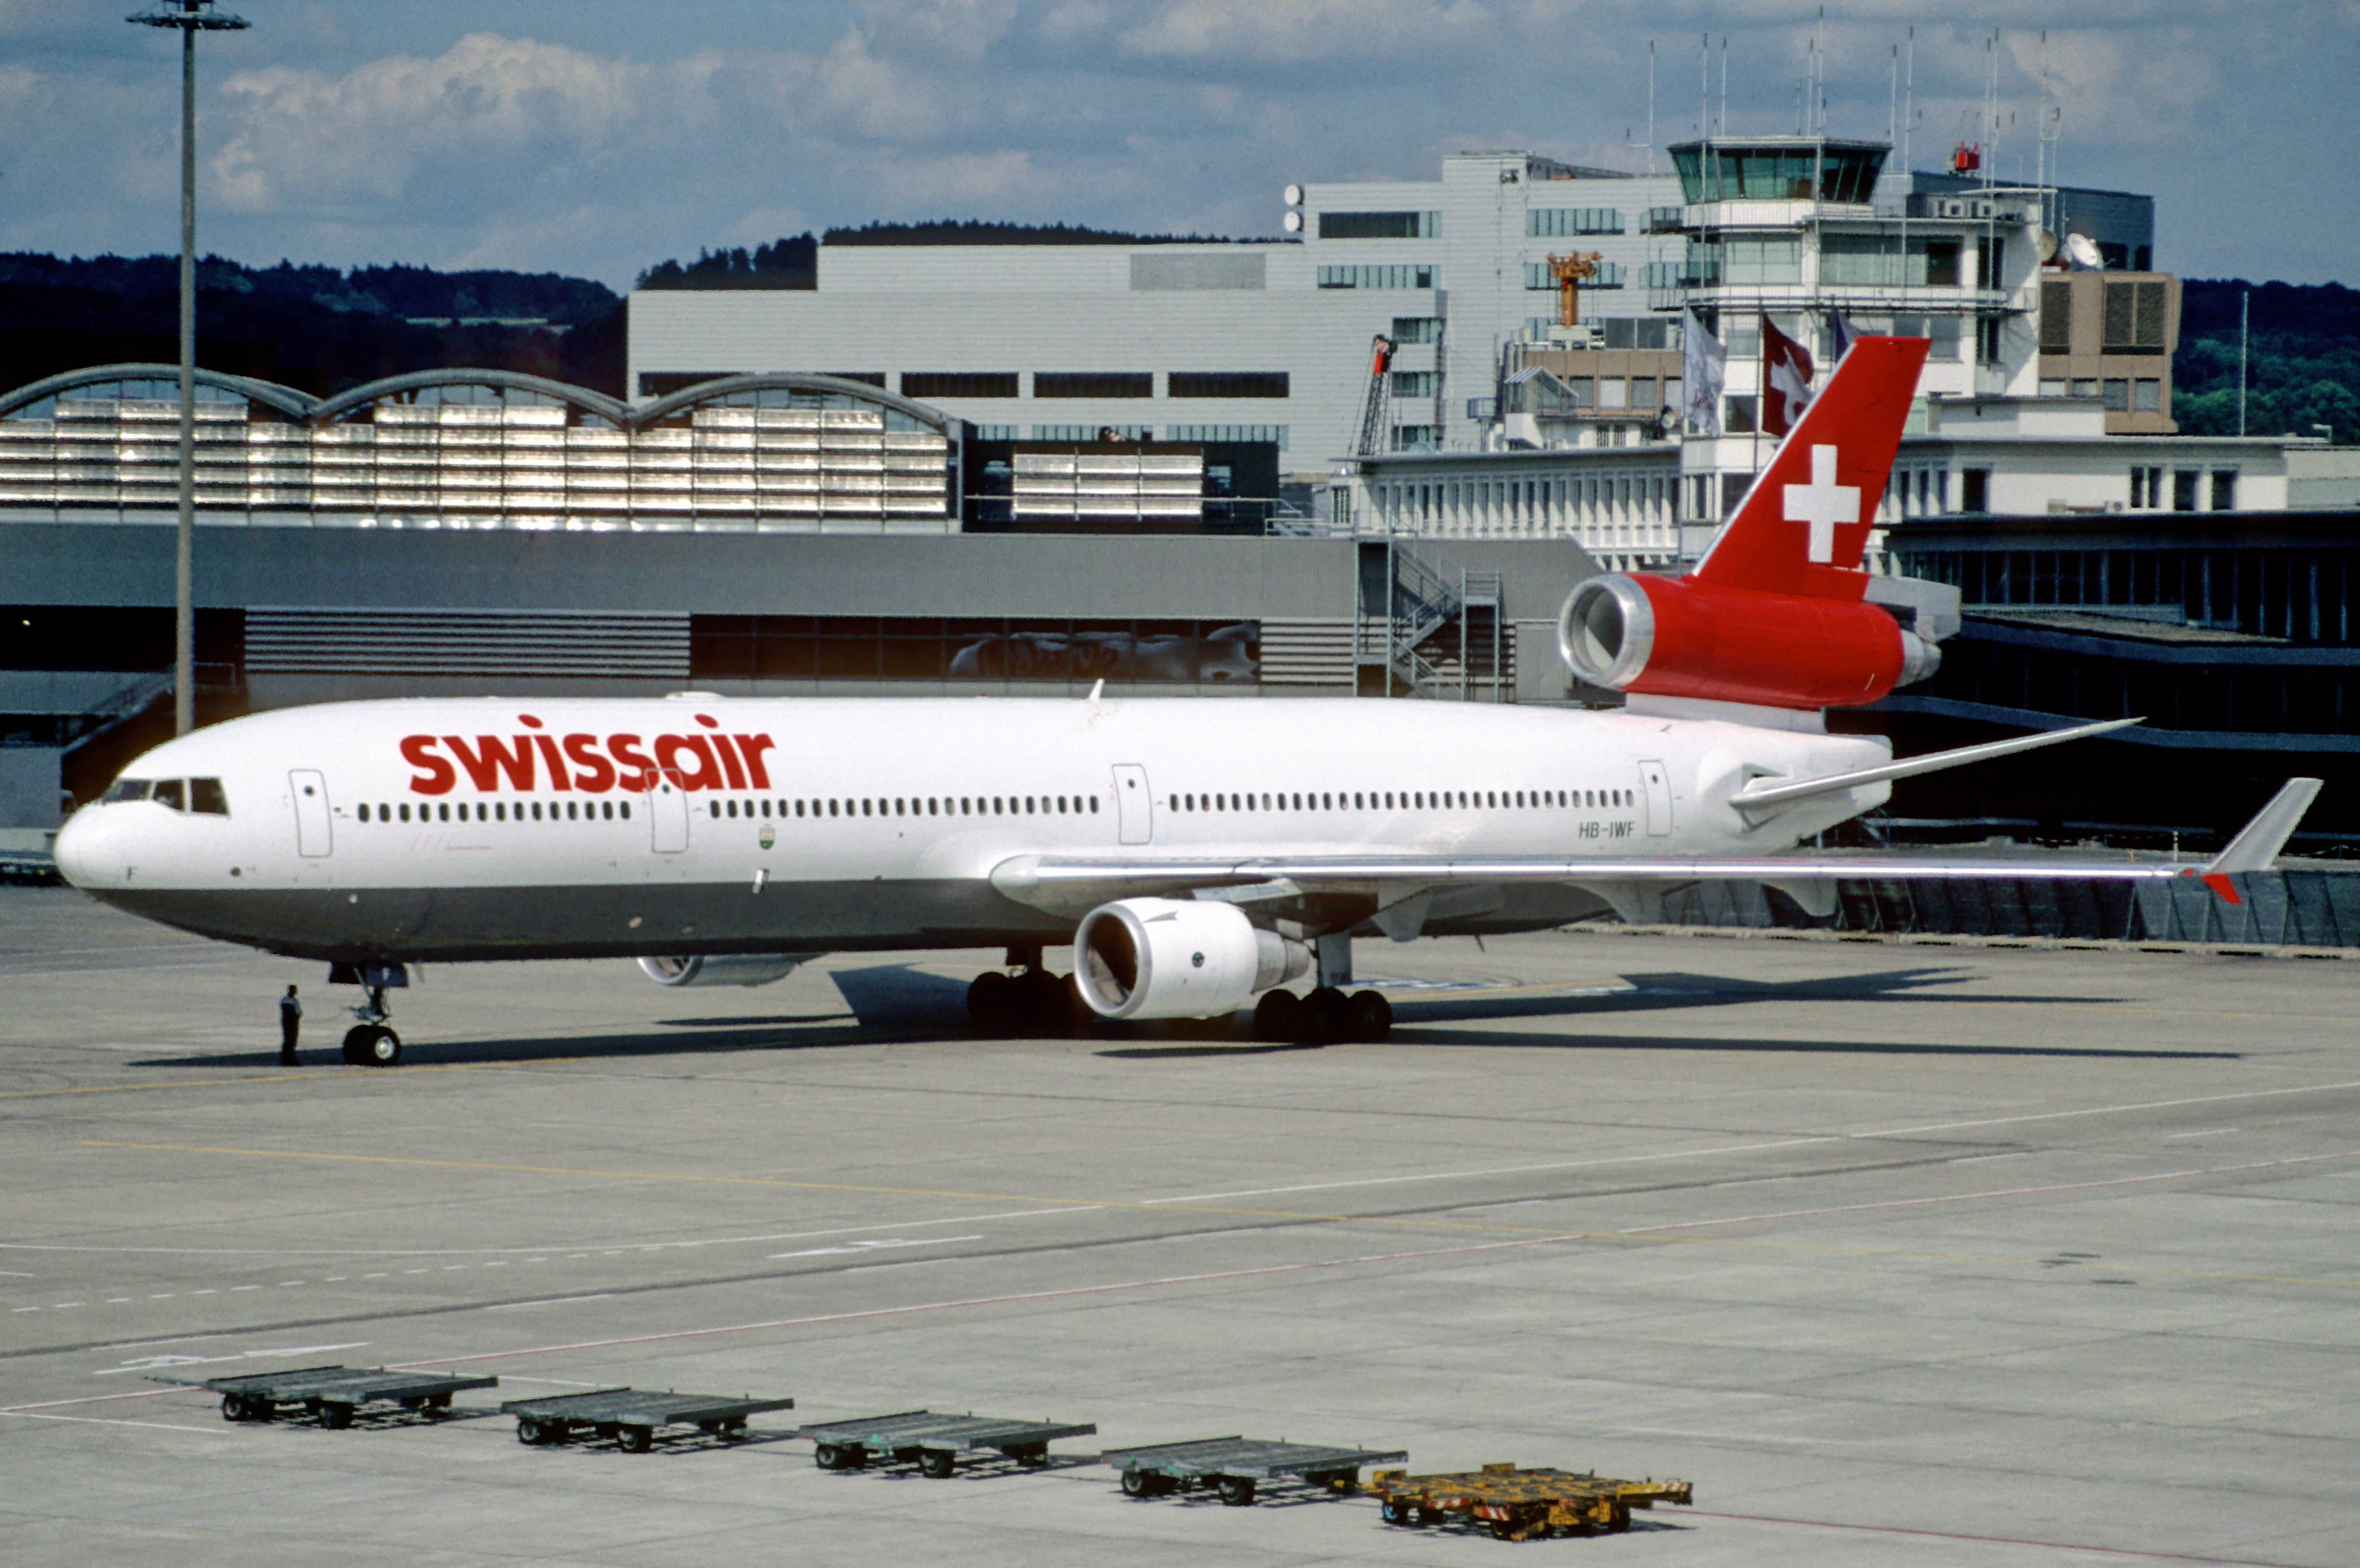 スイス航空111便墜落事故 - Wikipedia